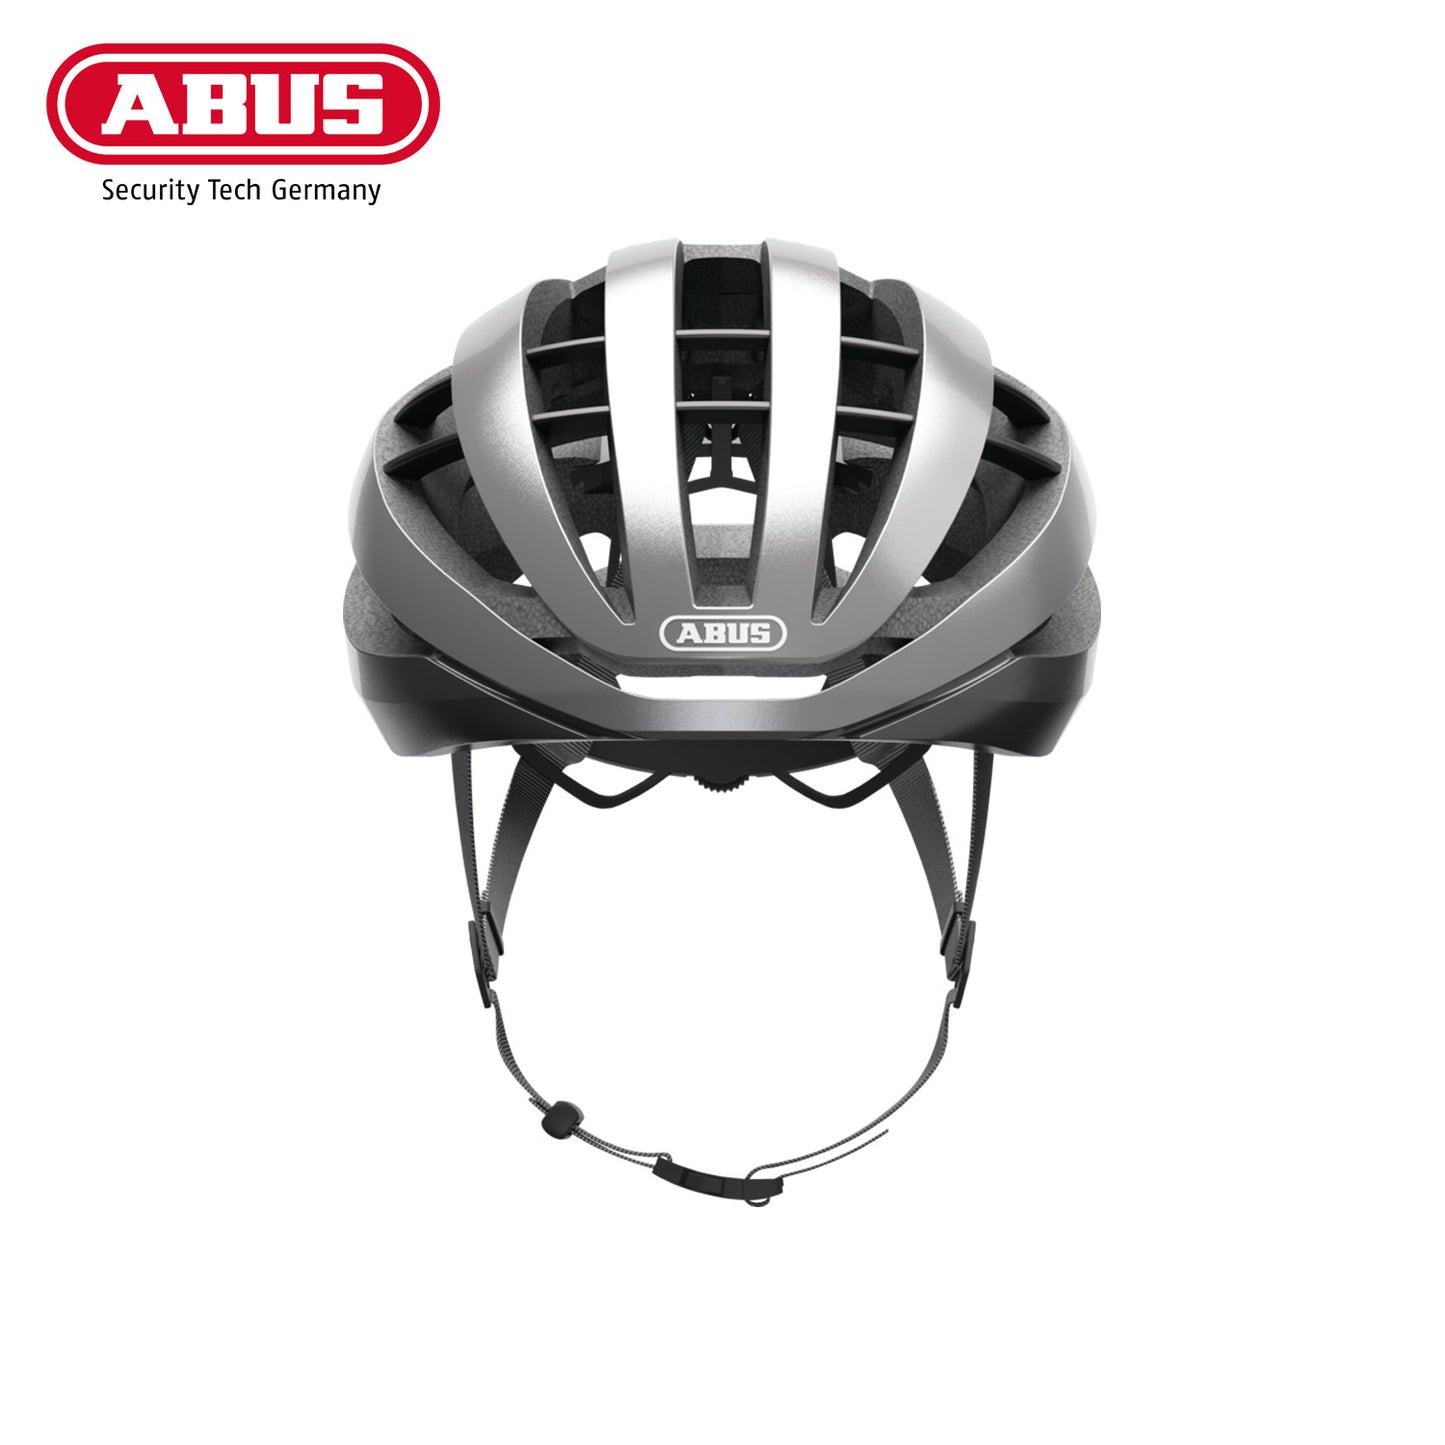 ABUS Road Helmet Aventor Bike Helmet - Dark Grey